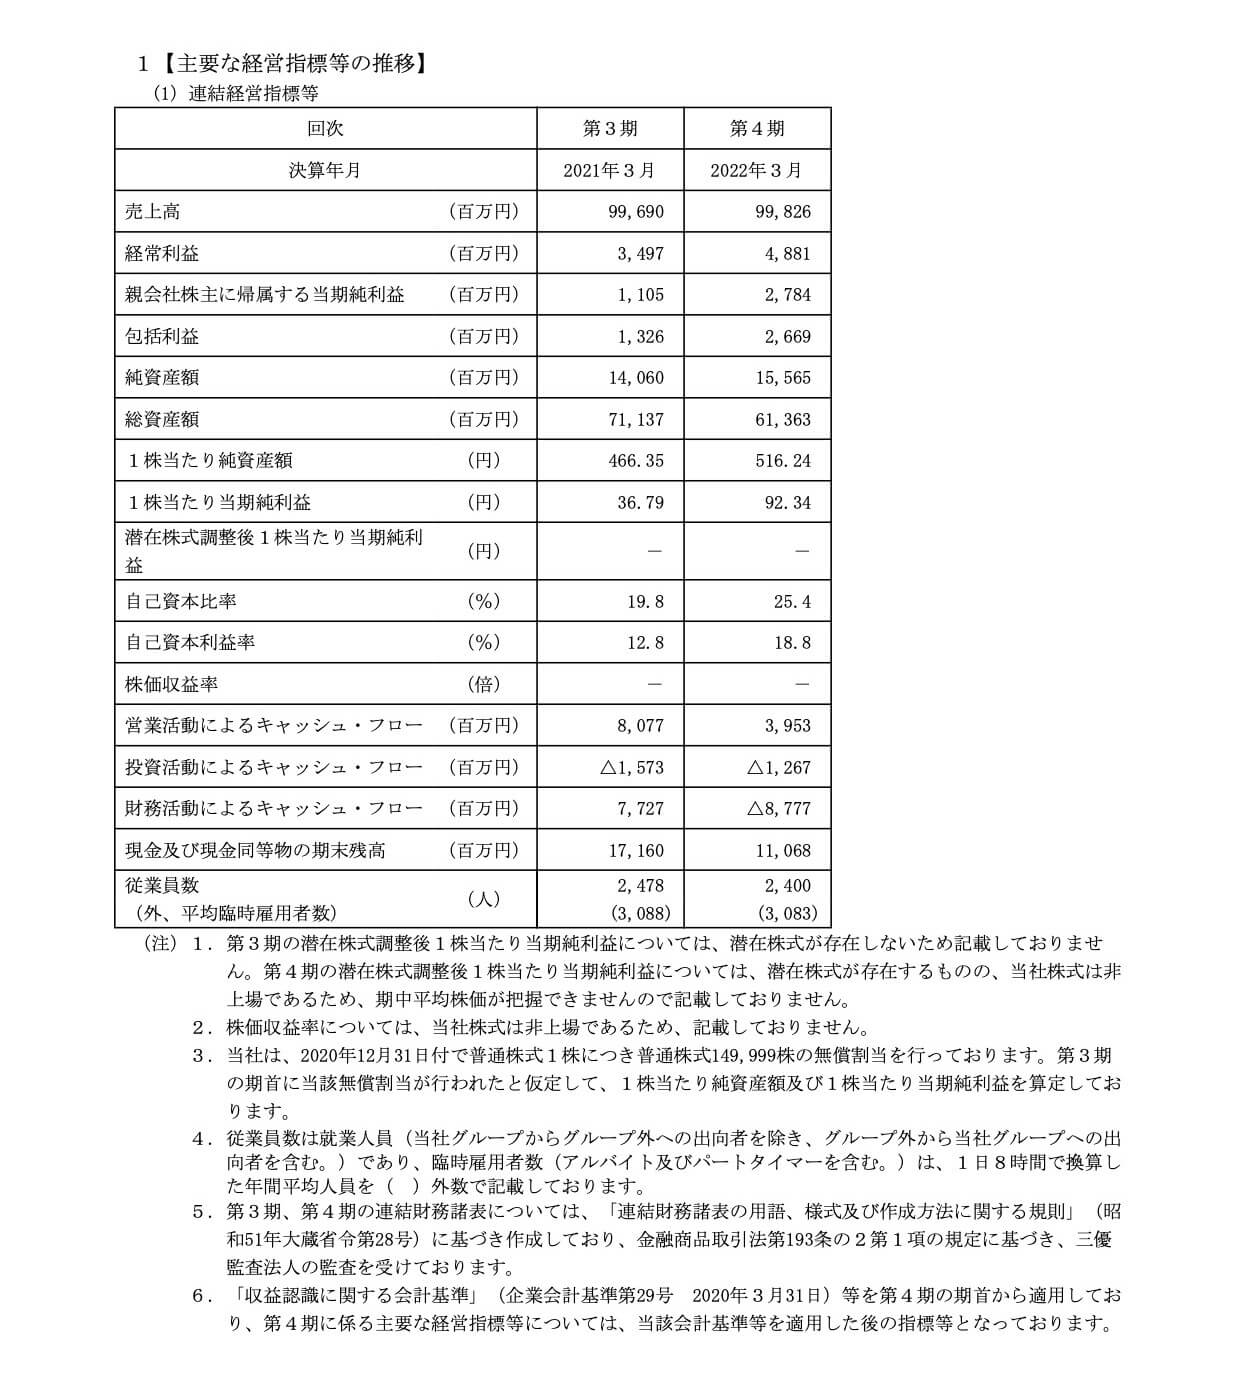 キタムラ・ホールディングス(9349)の経営指標等の推移(連結)